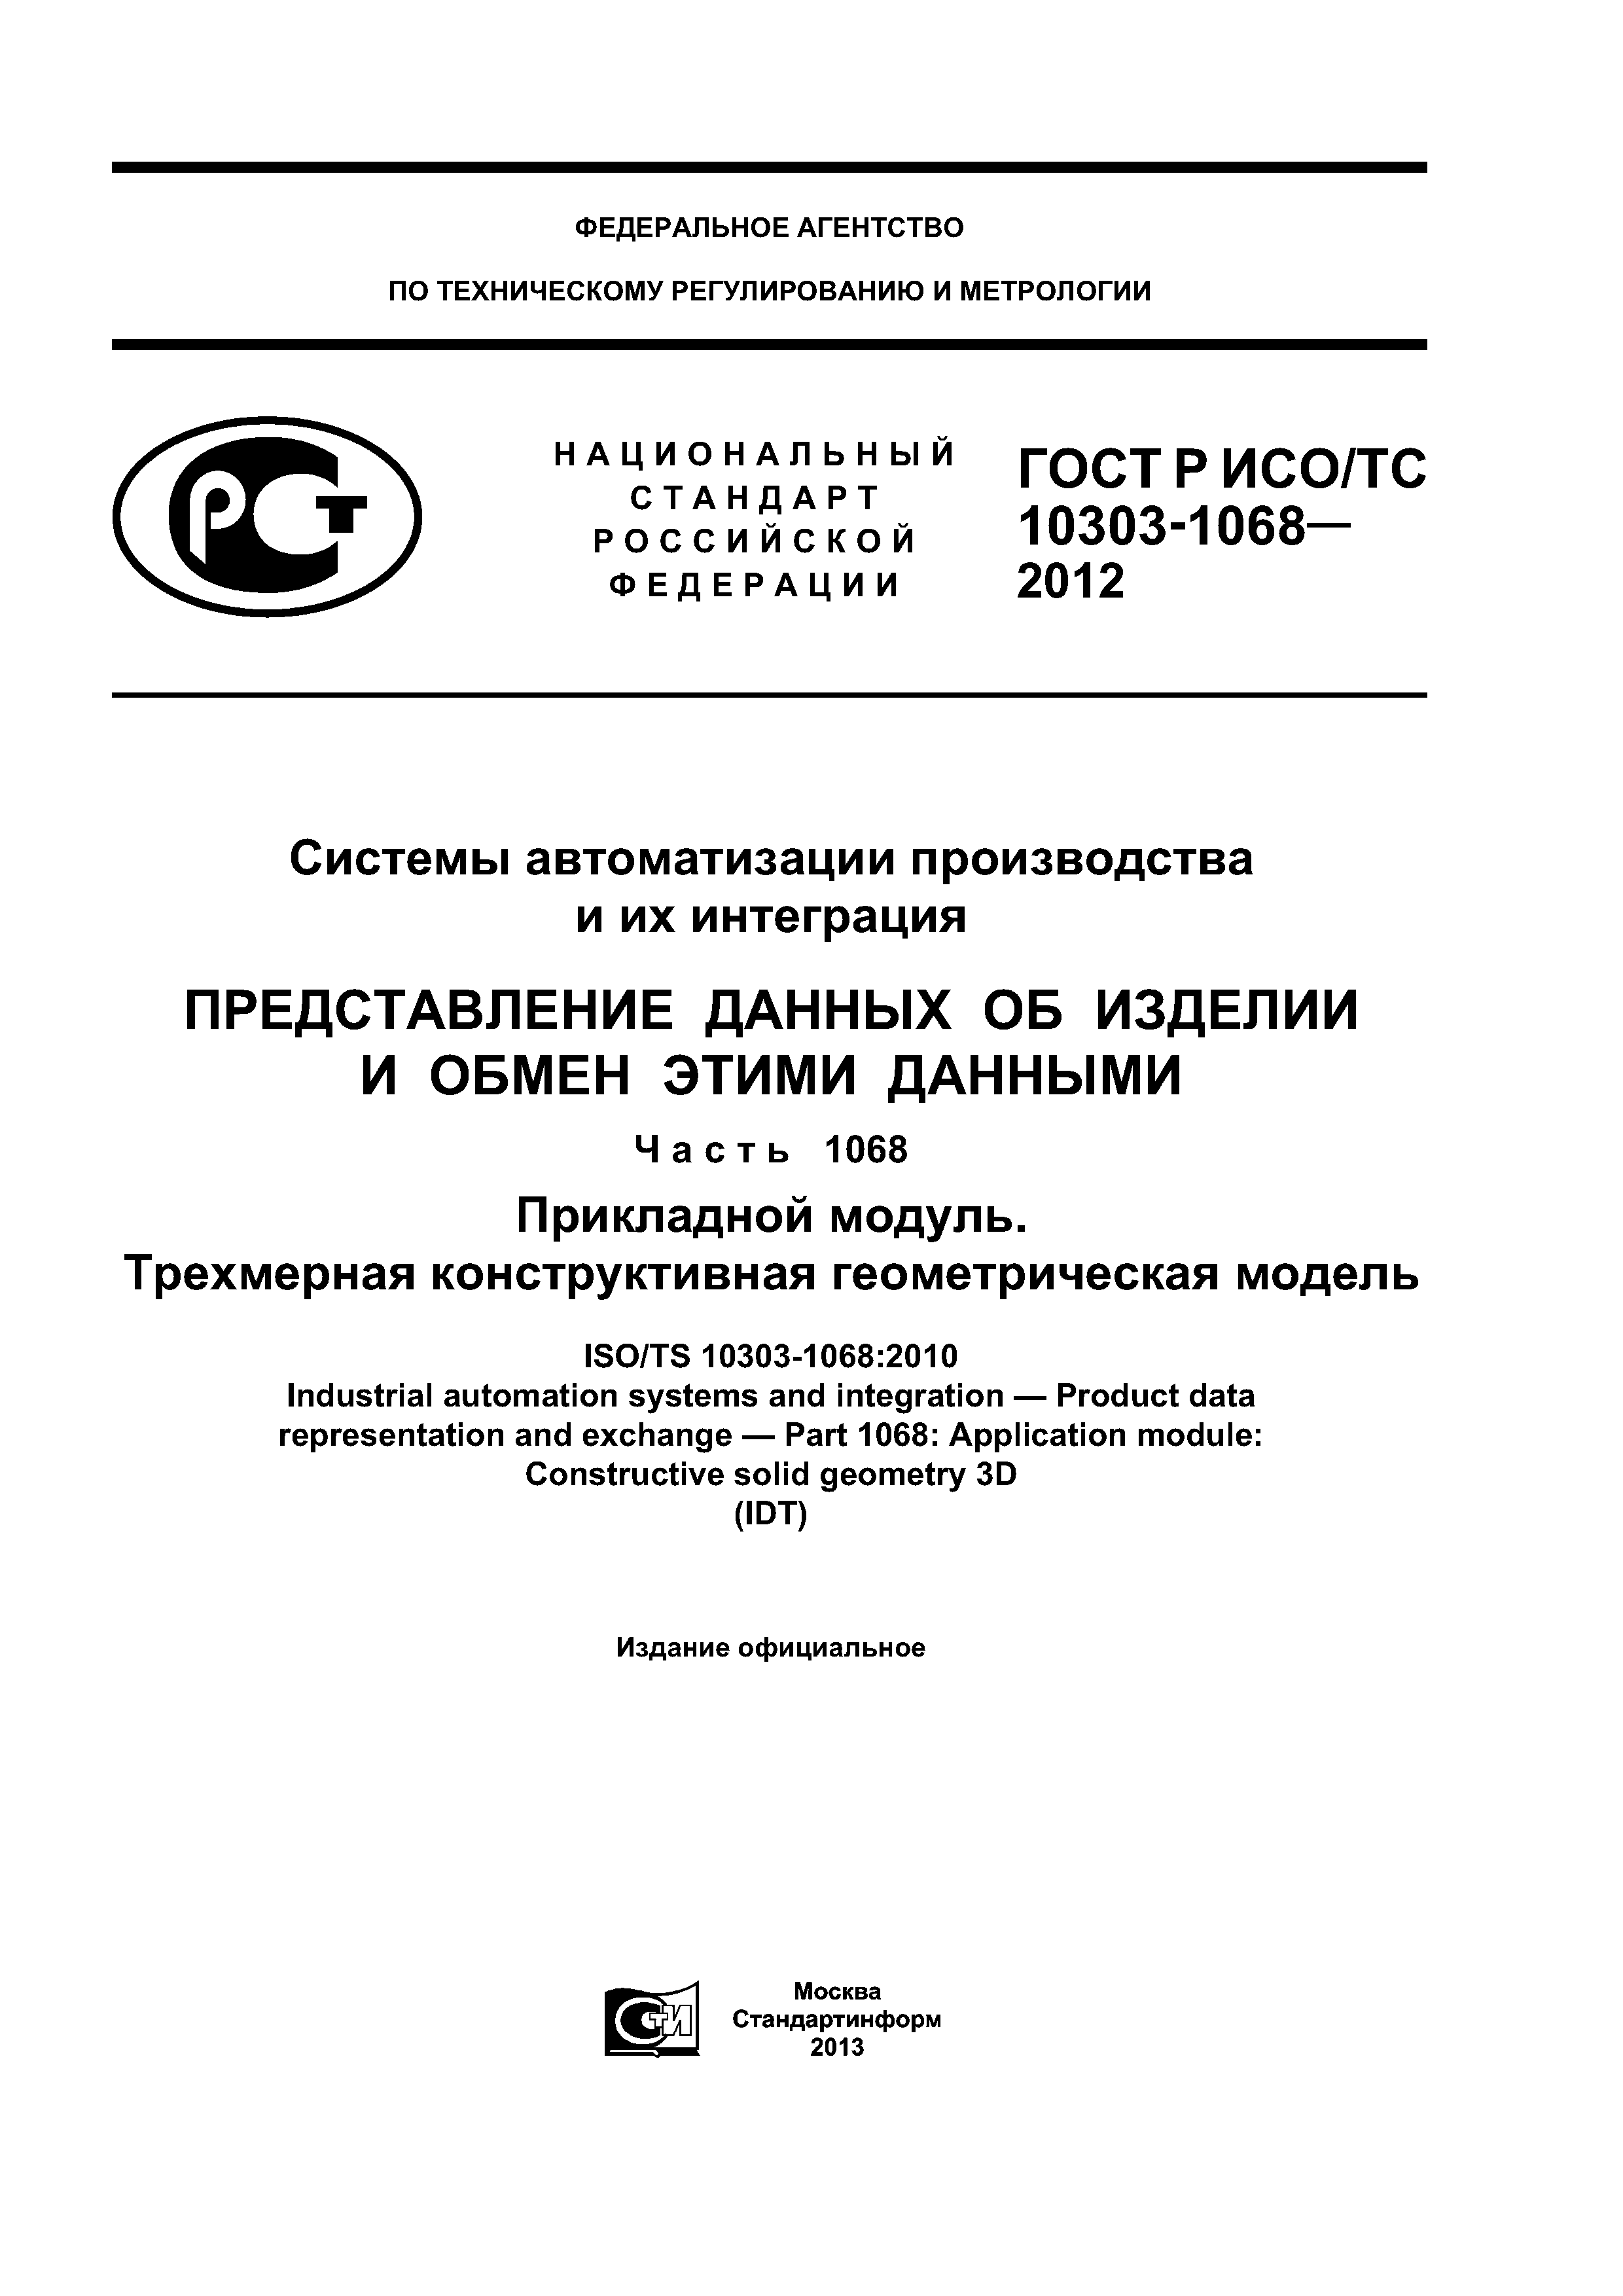 ГОСТ Р ИСО/ТС 10303-1068-2012